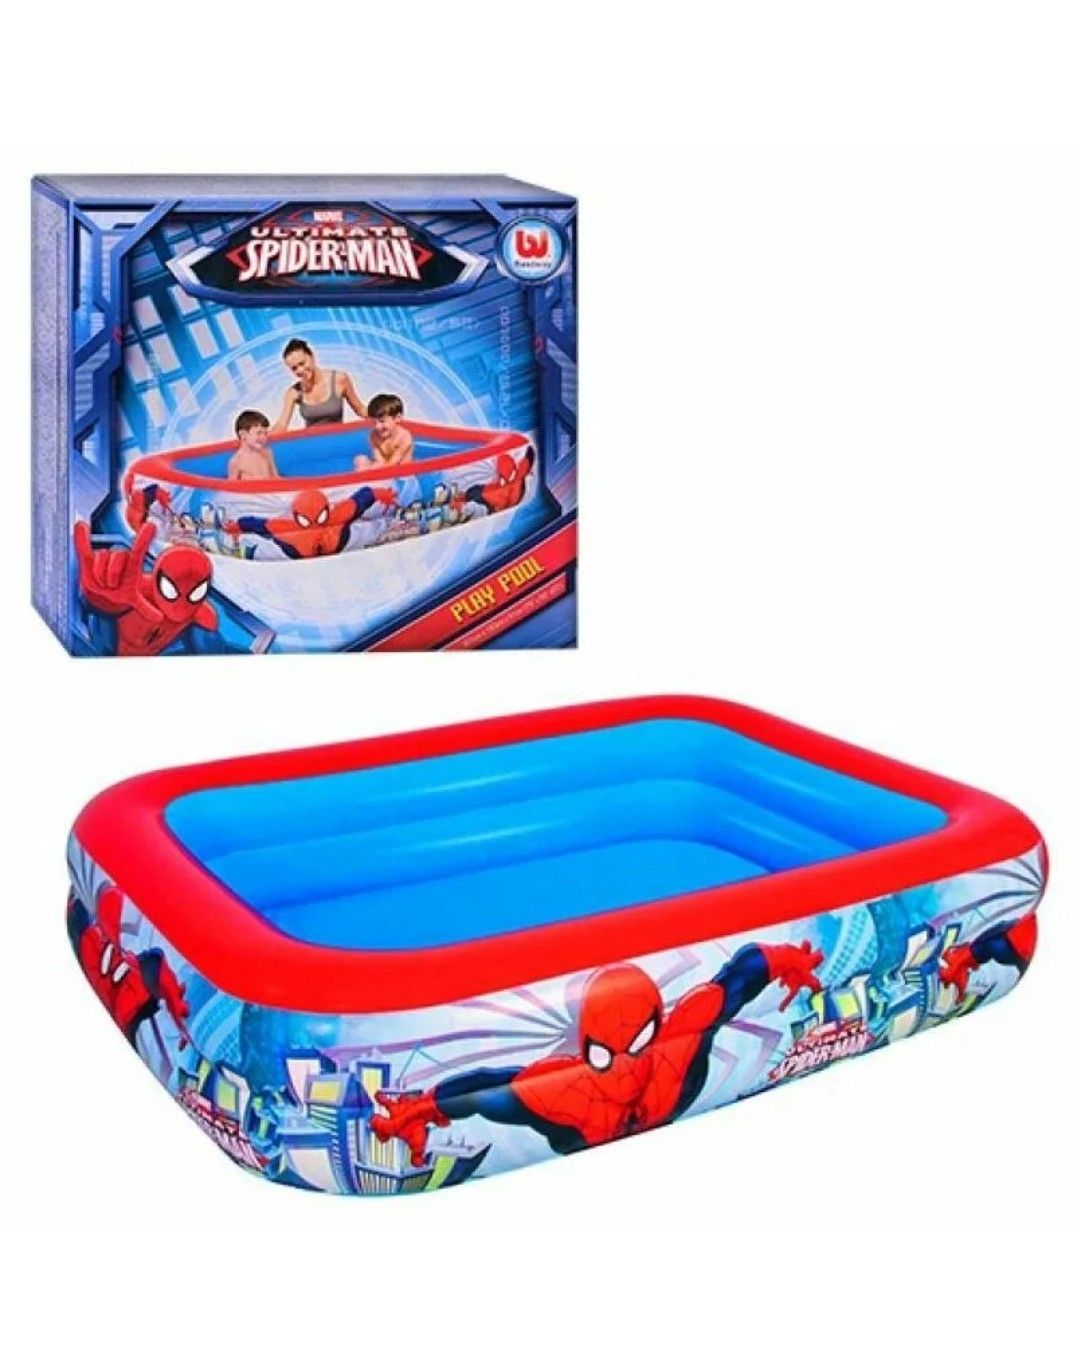 Детровен. Детский бассейн Bestway 98006 Spider-man. Bestway Spider man бассейн. Детский бассейн Bestway 98011 Spider-man.